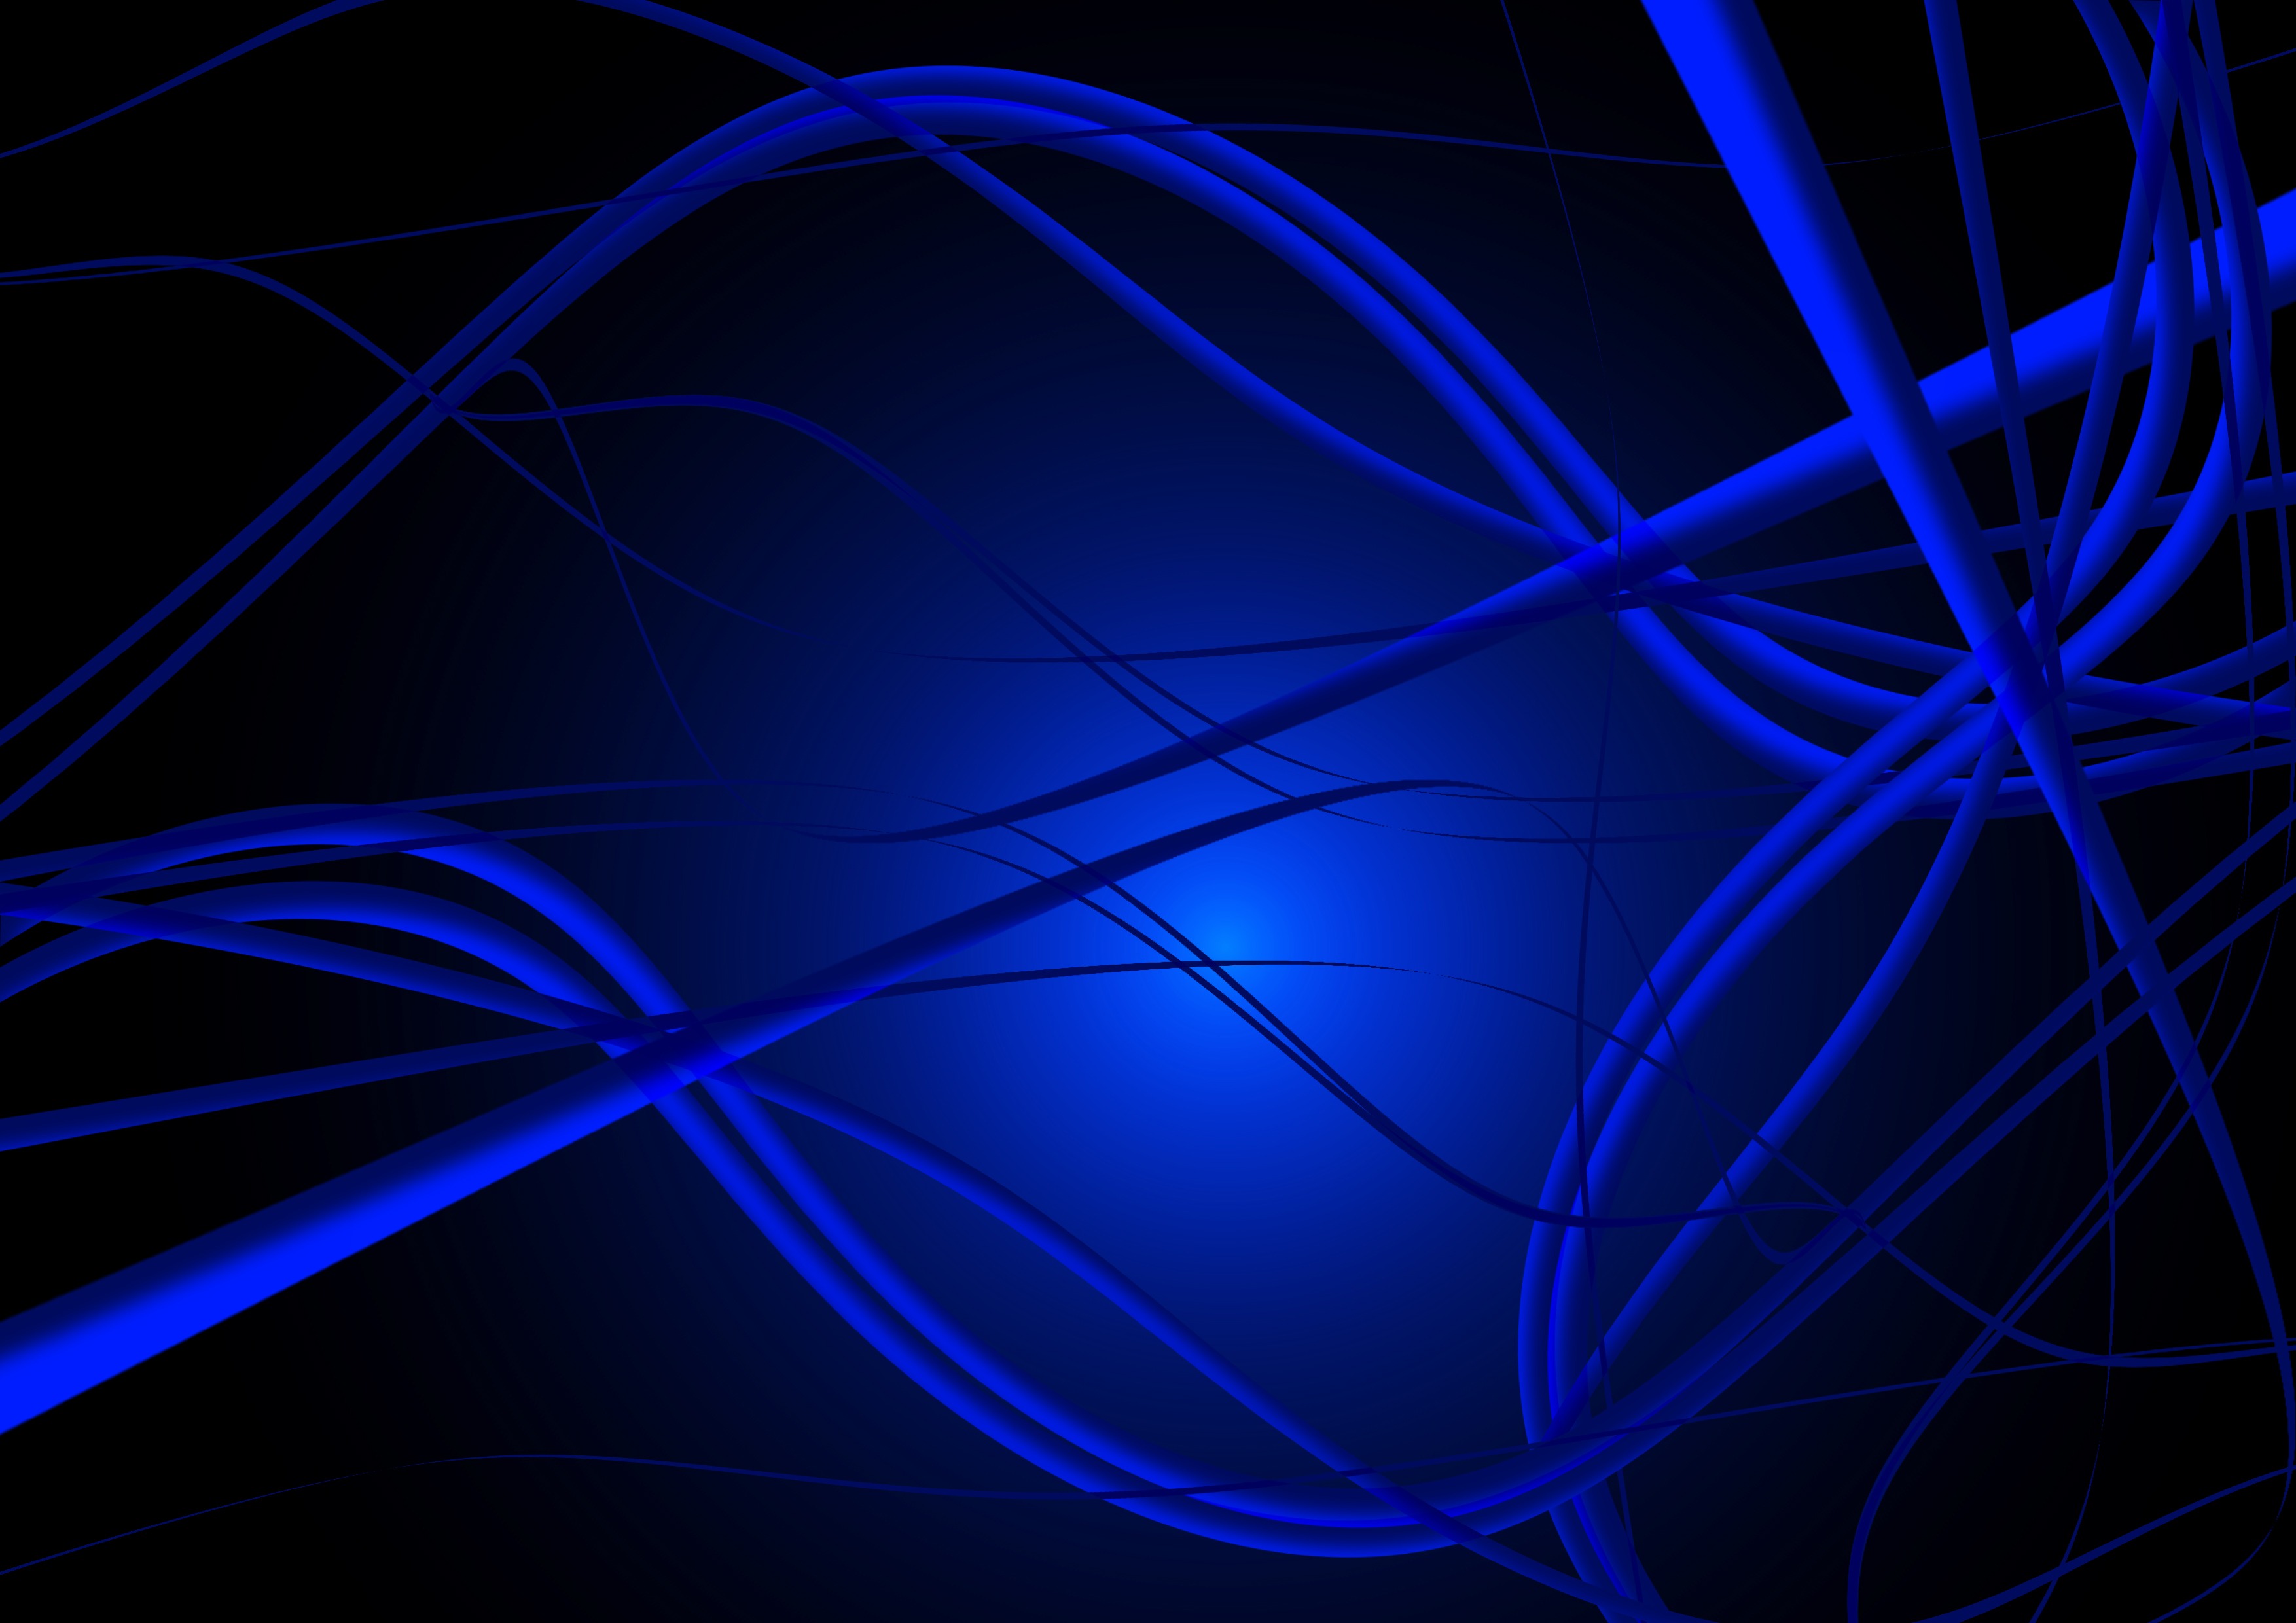 blue, 3d, plexus, lines, weave, connections, connection Free Stock Photo